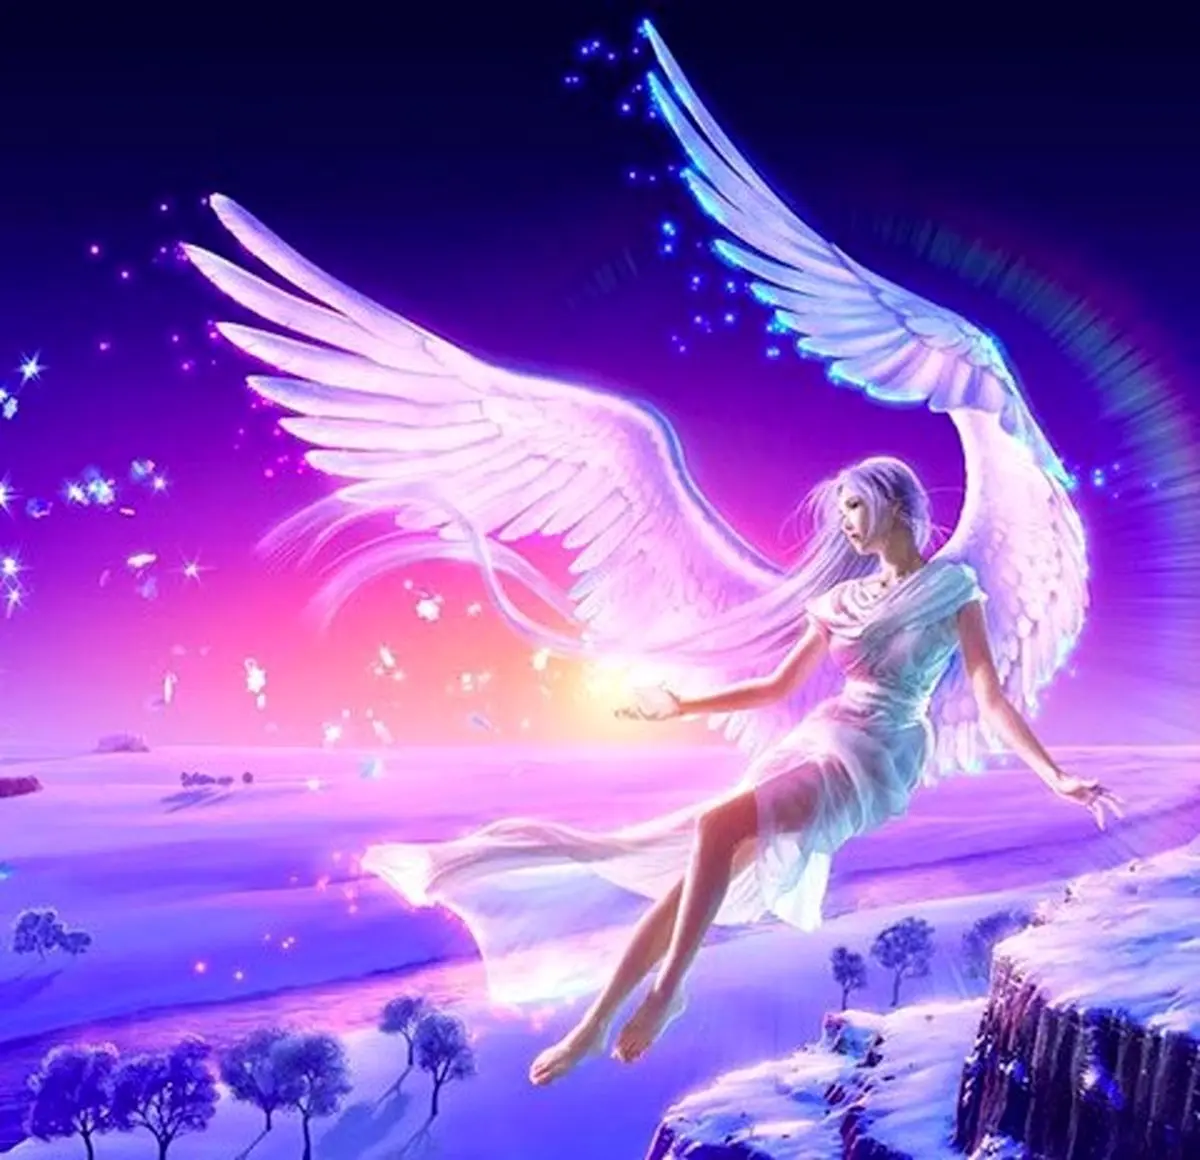 فال فرشتگان 8 آبان ماه | فرشتگان برای شما چه پیام مثبتی دارند؟